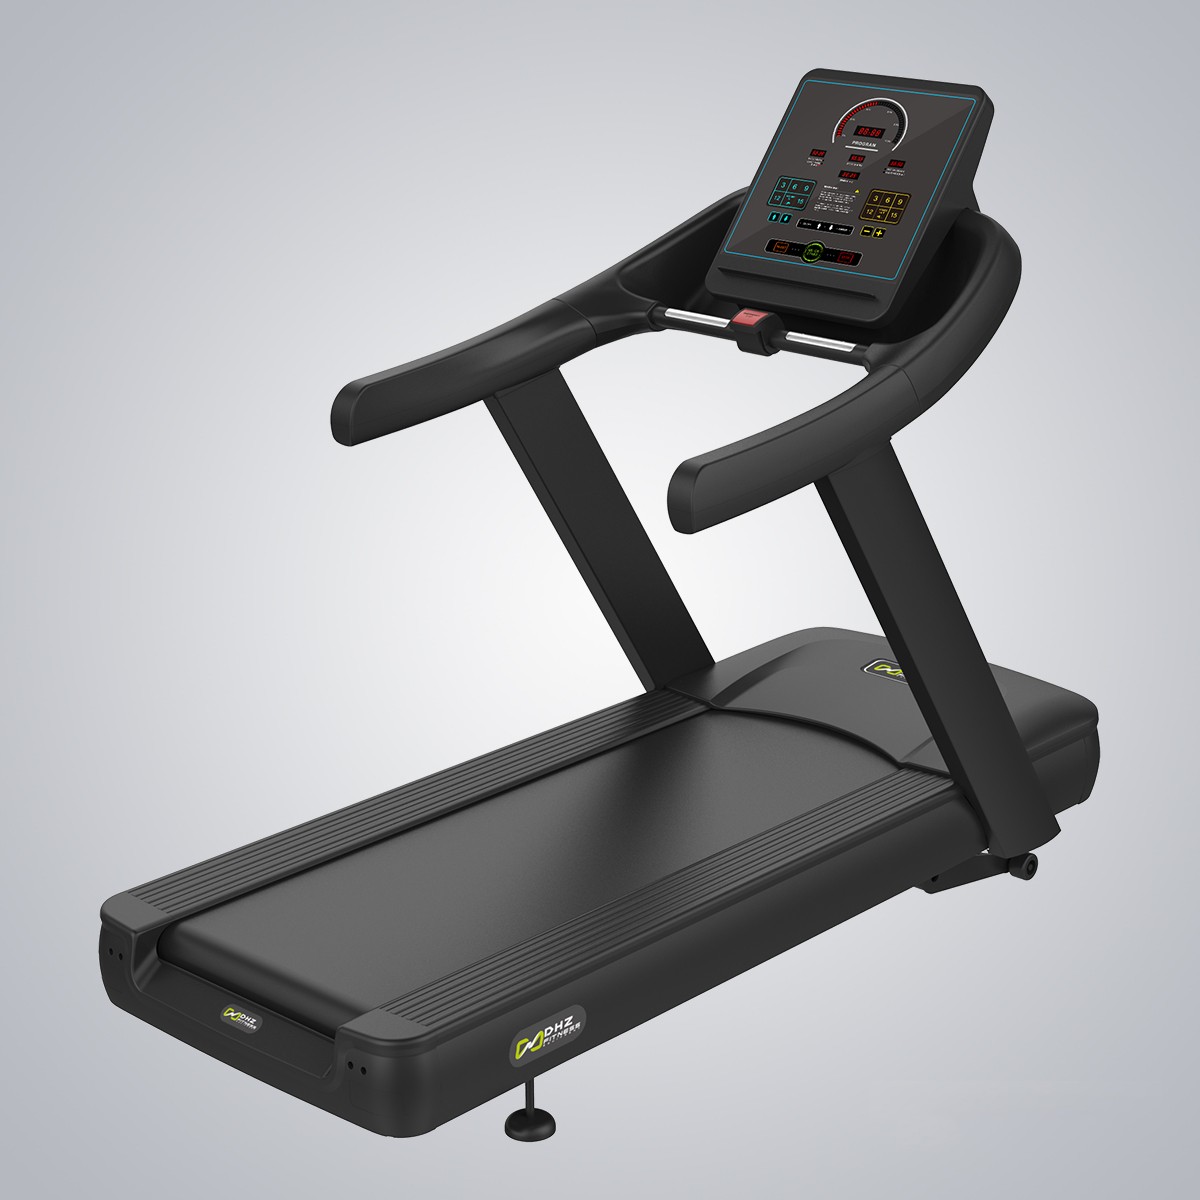 Treadmill X8400